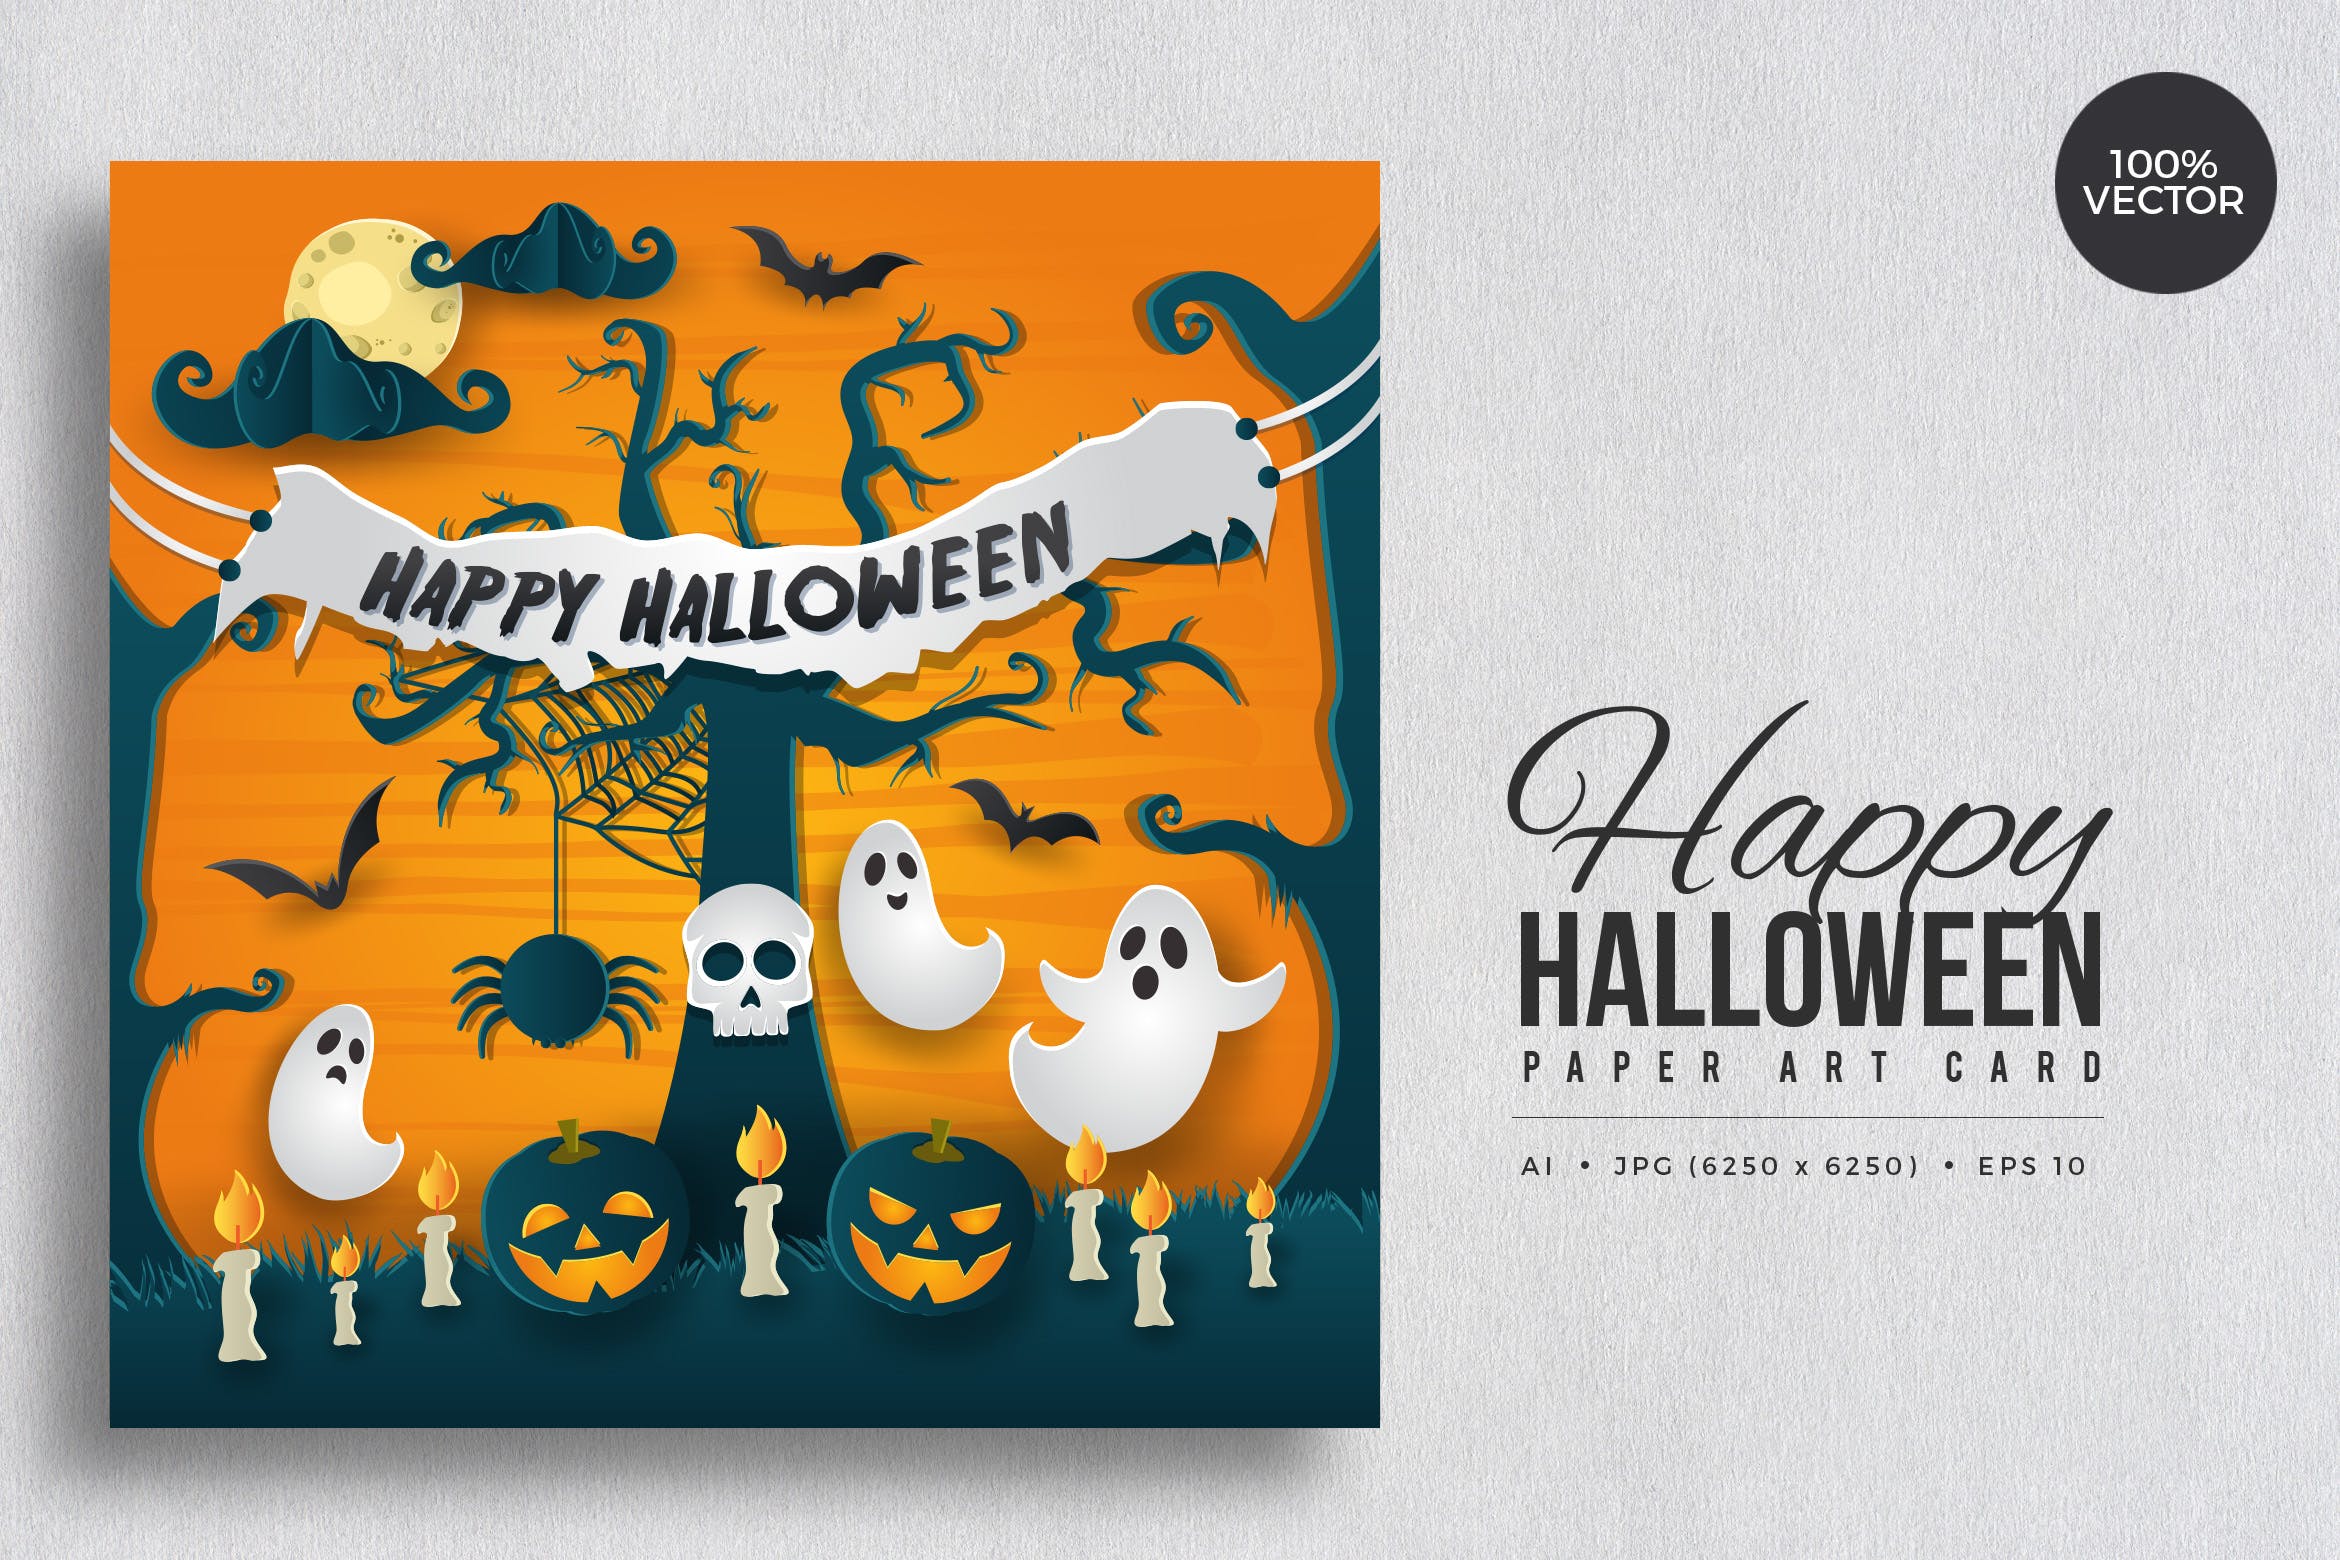 万圣节庆祝主题剪纸艺术矢量插画素材v3 Happy Halloween Paper Art Vector Card Vol.3插图